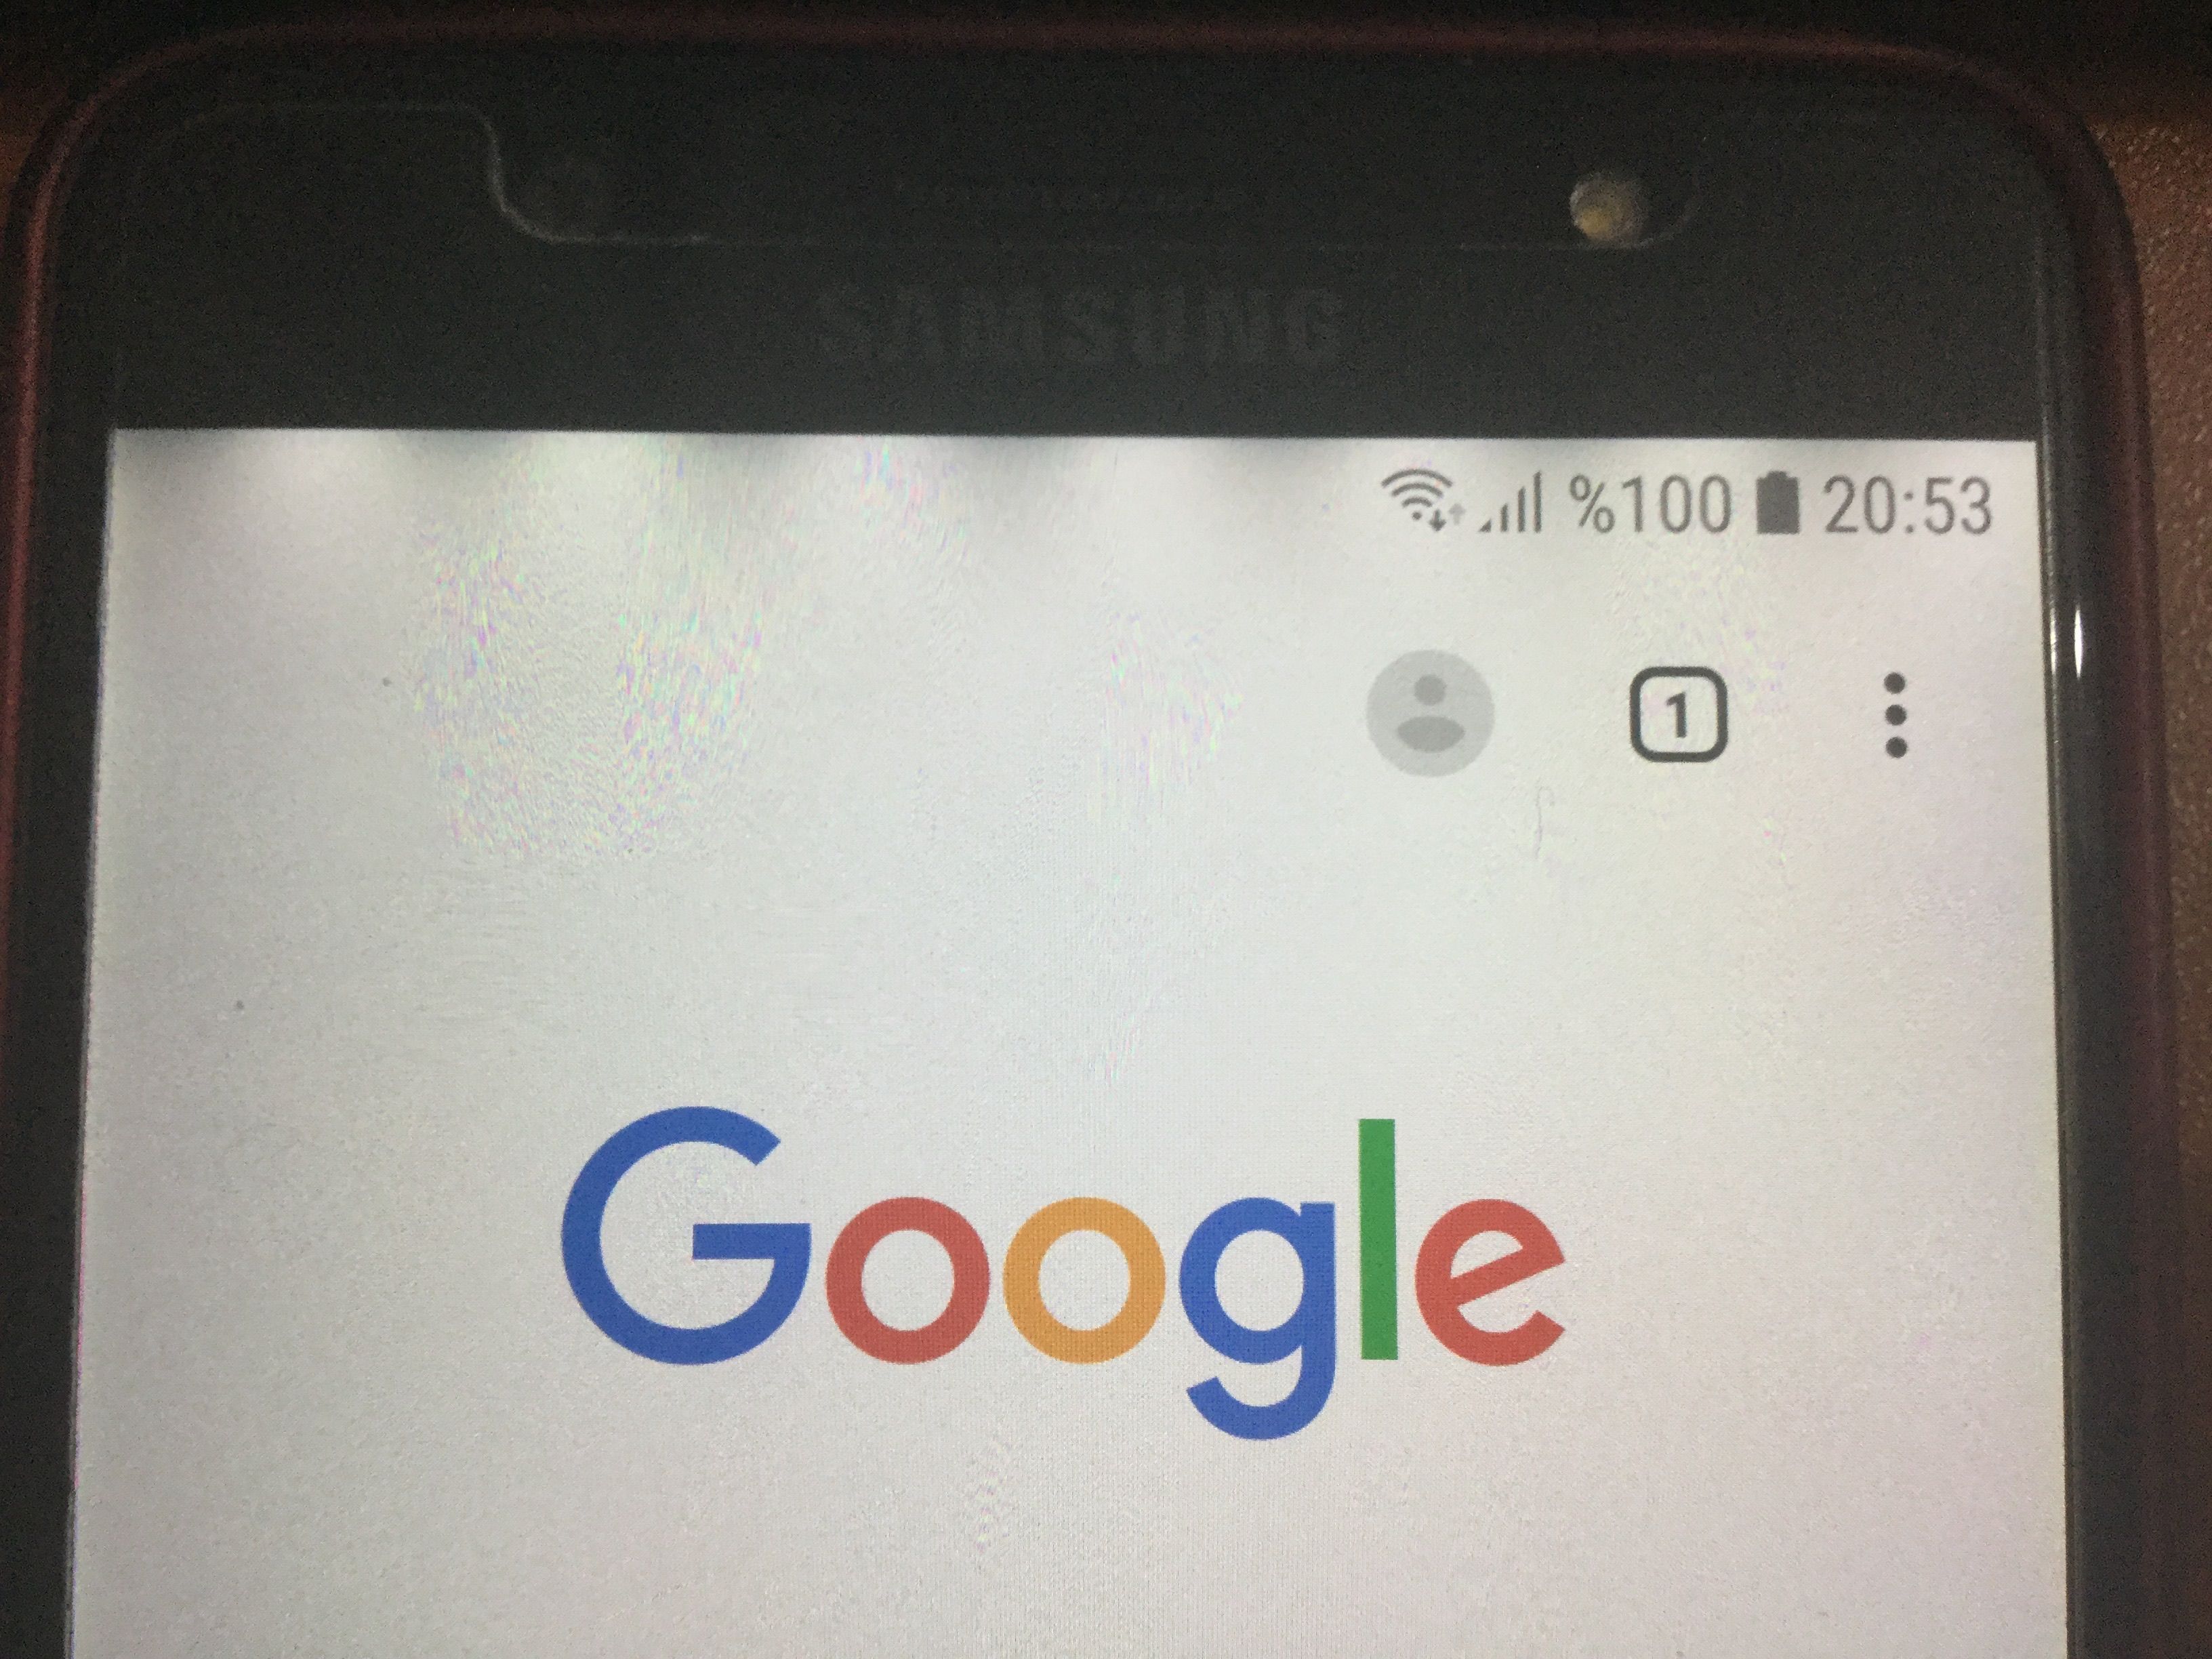 Samsung J7 Max ekranı mı yandı? | Technopat Sosyal